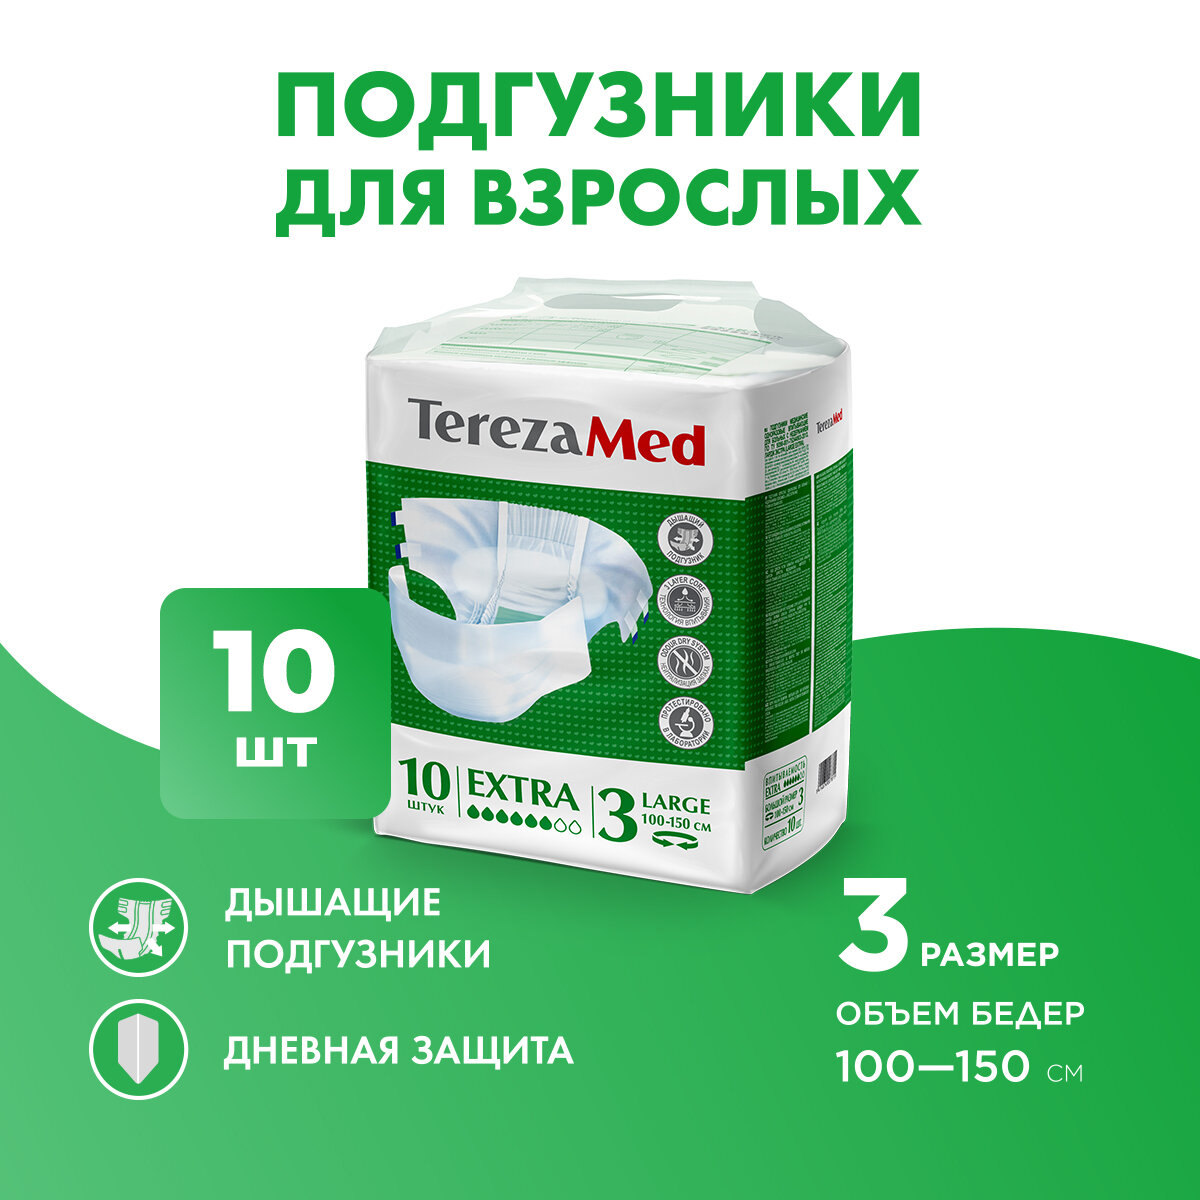 Подгузники для взрослых TerezaMed, Extra Large (3), 10 шт.